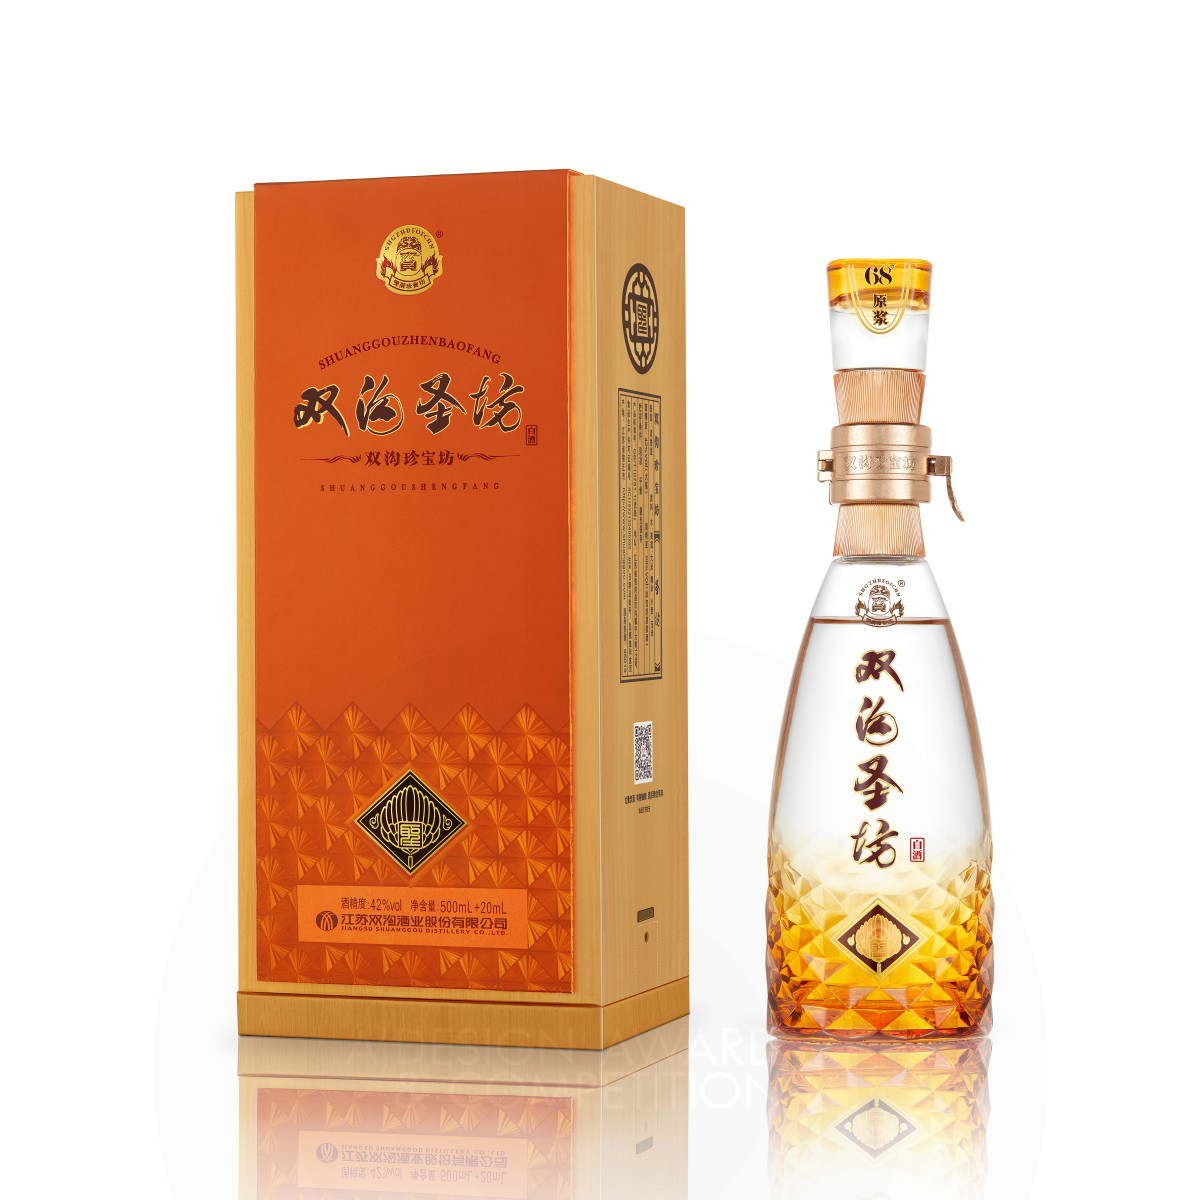 Shuanggou Shengfang Alcoholic Beverage Packaging by Wen Liu